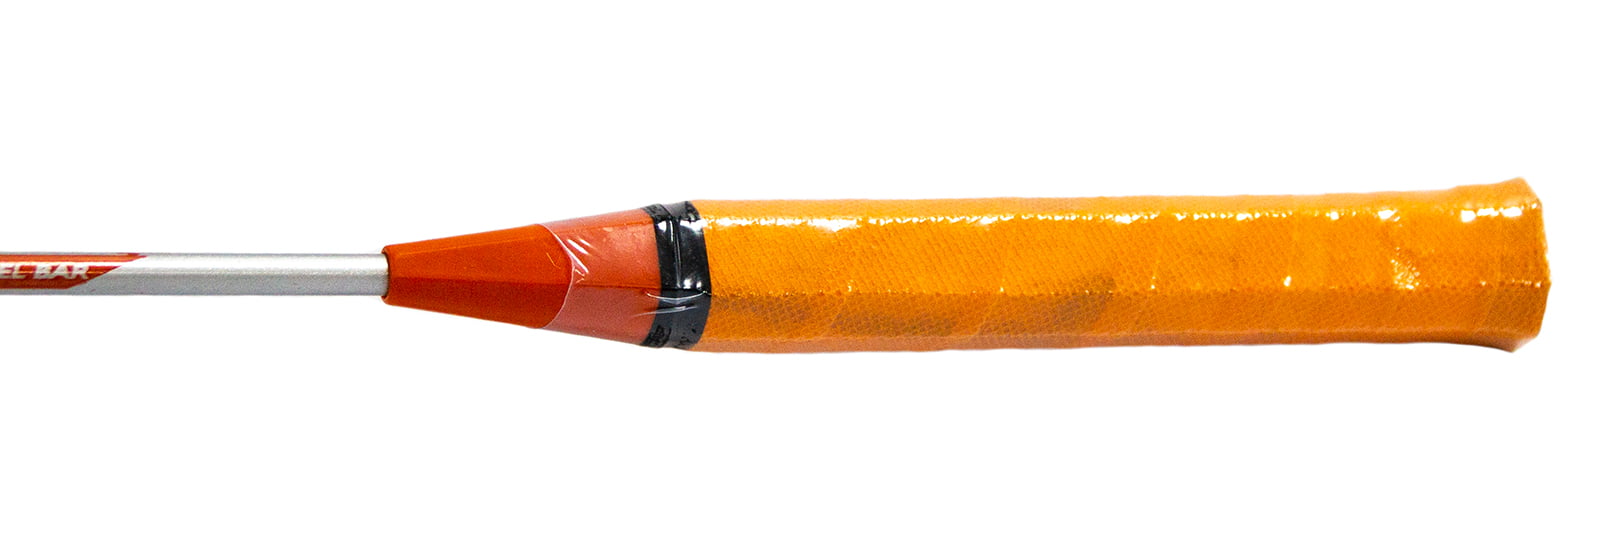 Ракетки для бадминтона BOKA в чехле, Т13981 / оранжевый